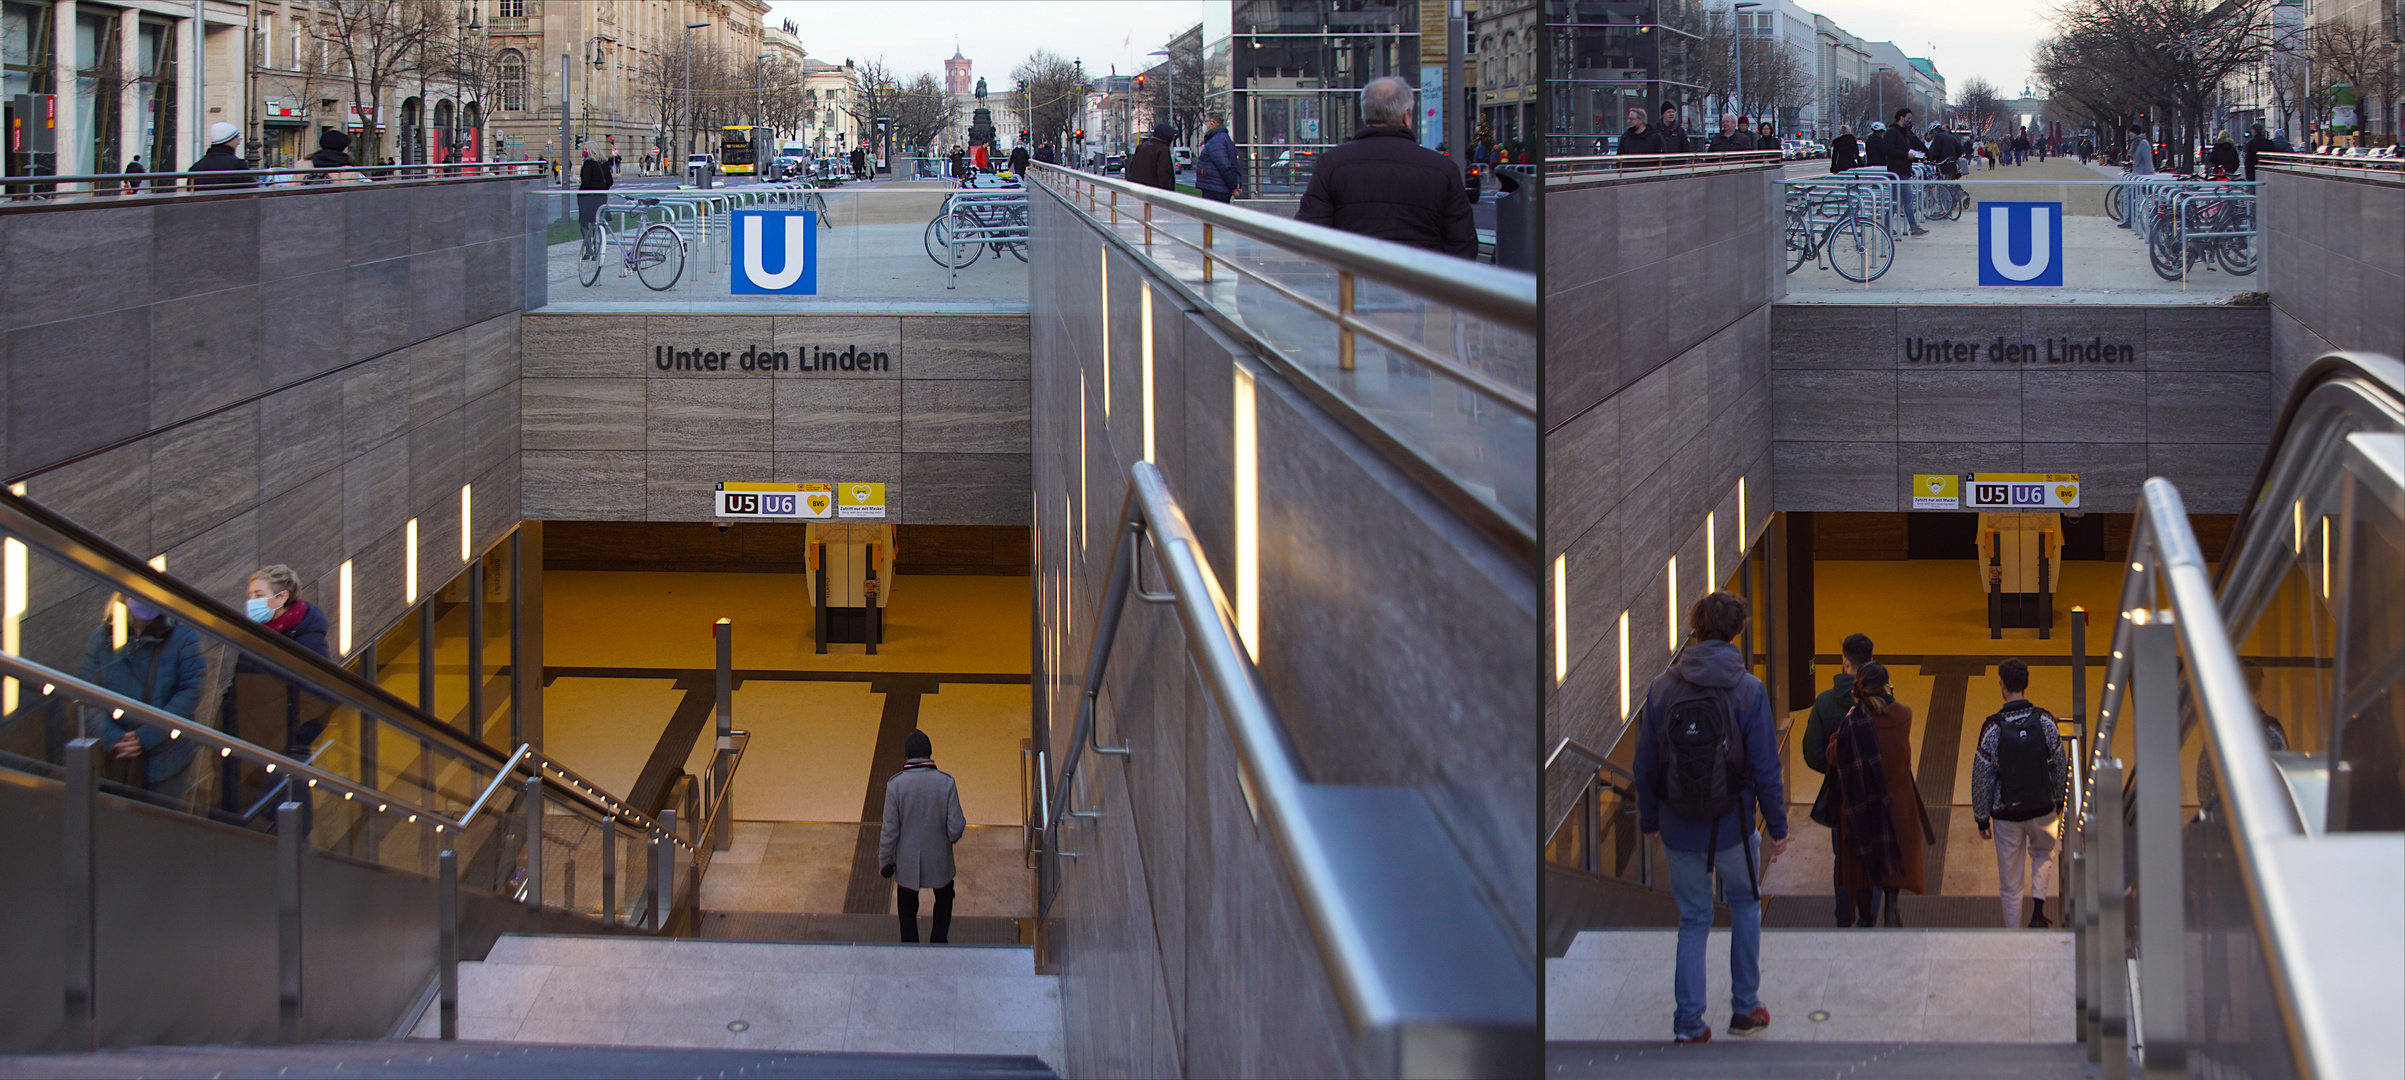 Neue U-Bahn-Station "Unter den Linden": Blicke nach Osten und Westen